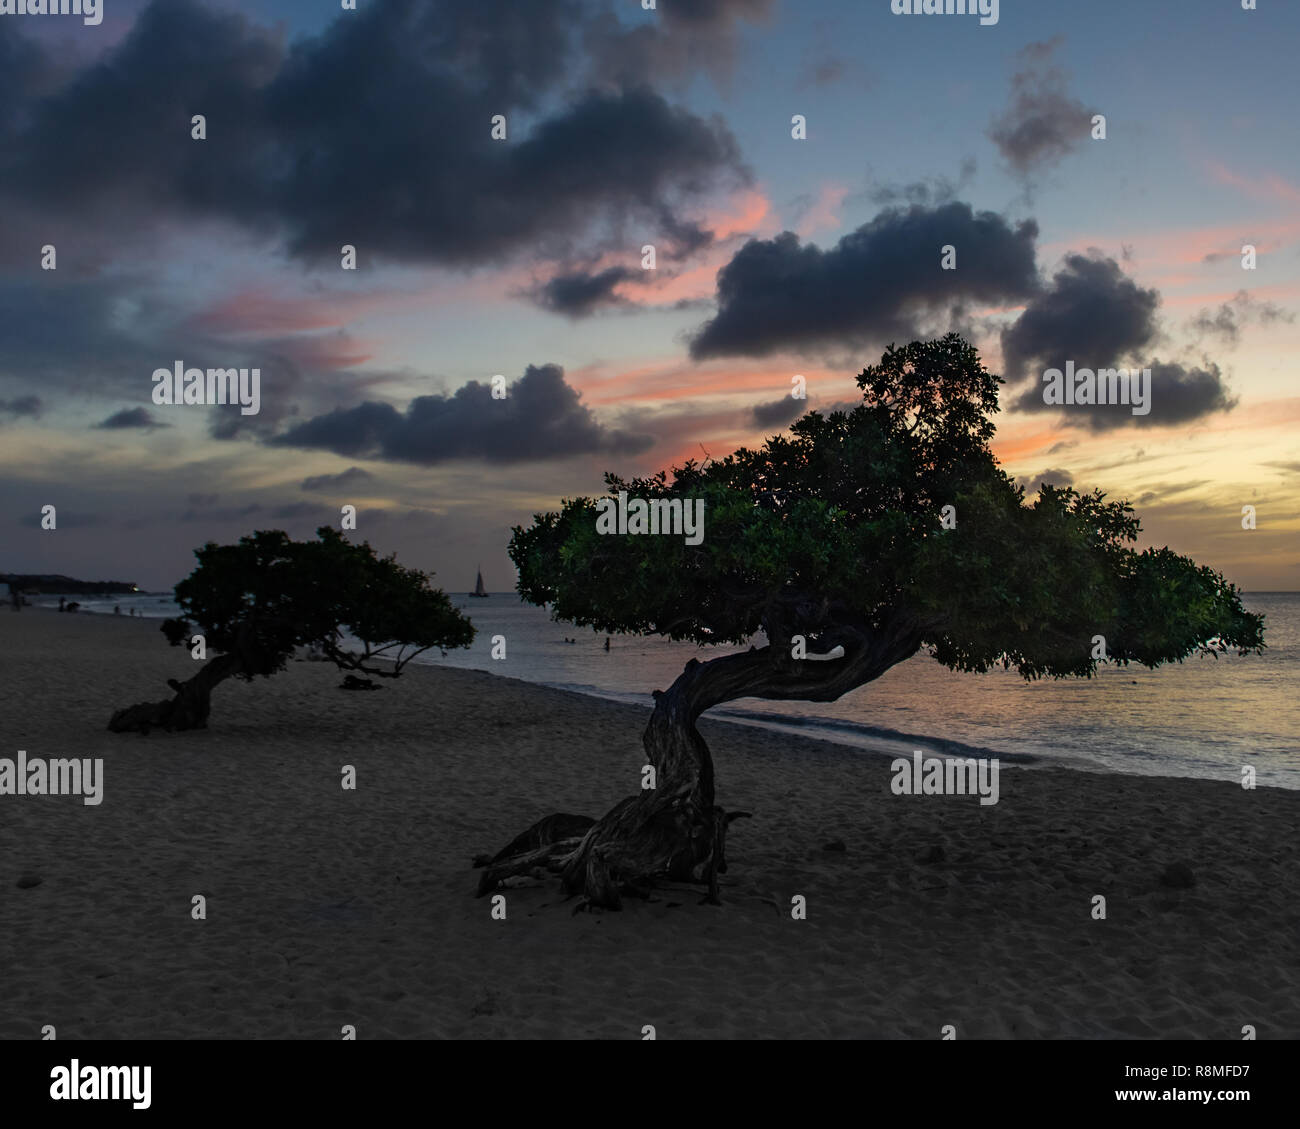 Aruba Beach - albero Divi-Divi Eagle Beach Aruba al tramonto - la famosa in tutto il mondo Divi Divi alberi aka. Libidibia coriaria - una leguminose albero nativa dei Caraibi Foto Stock